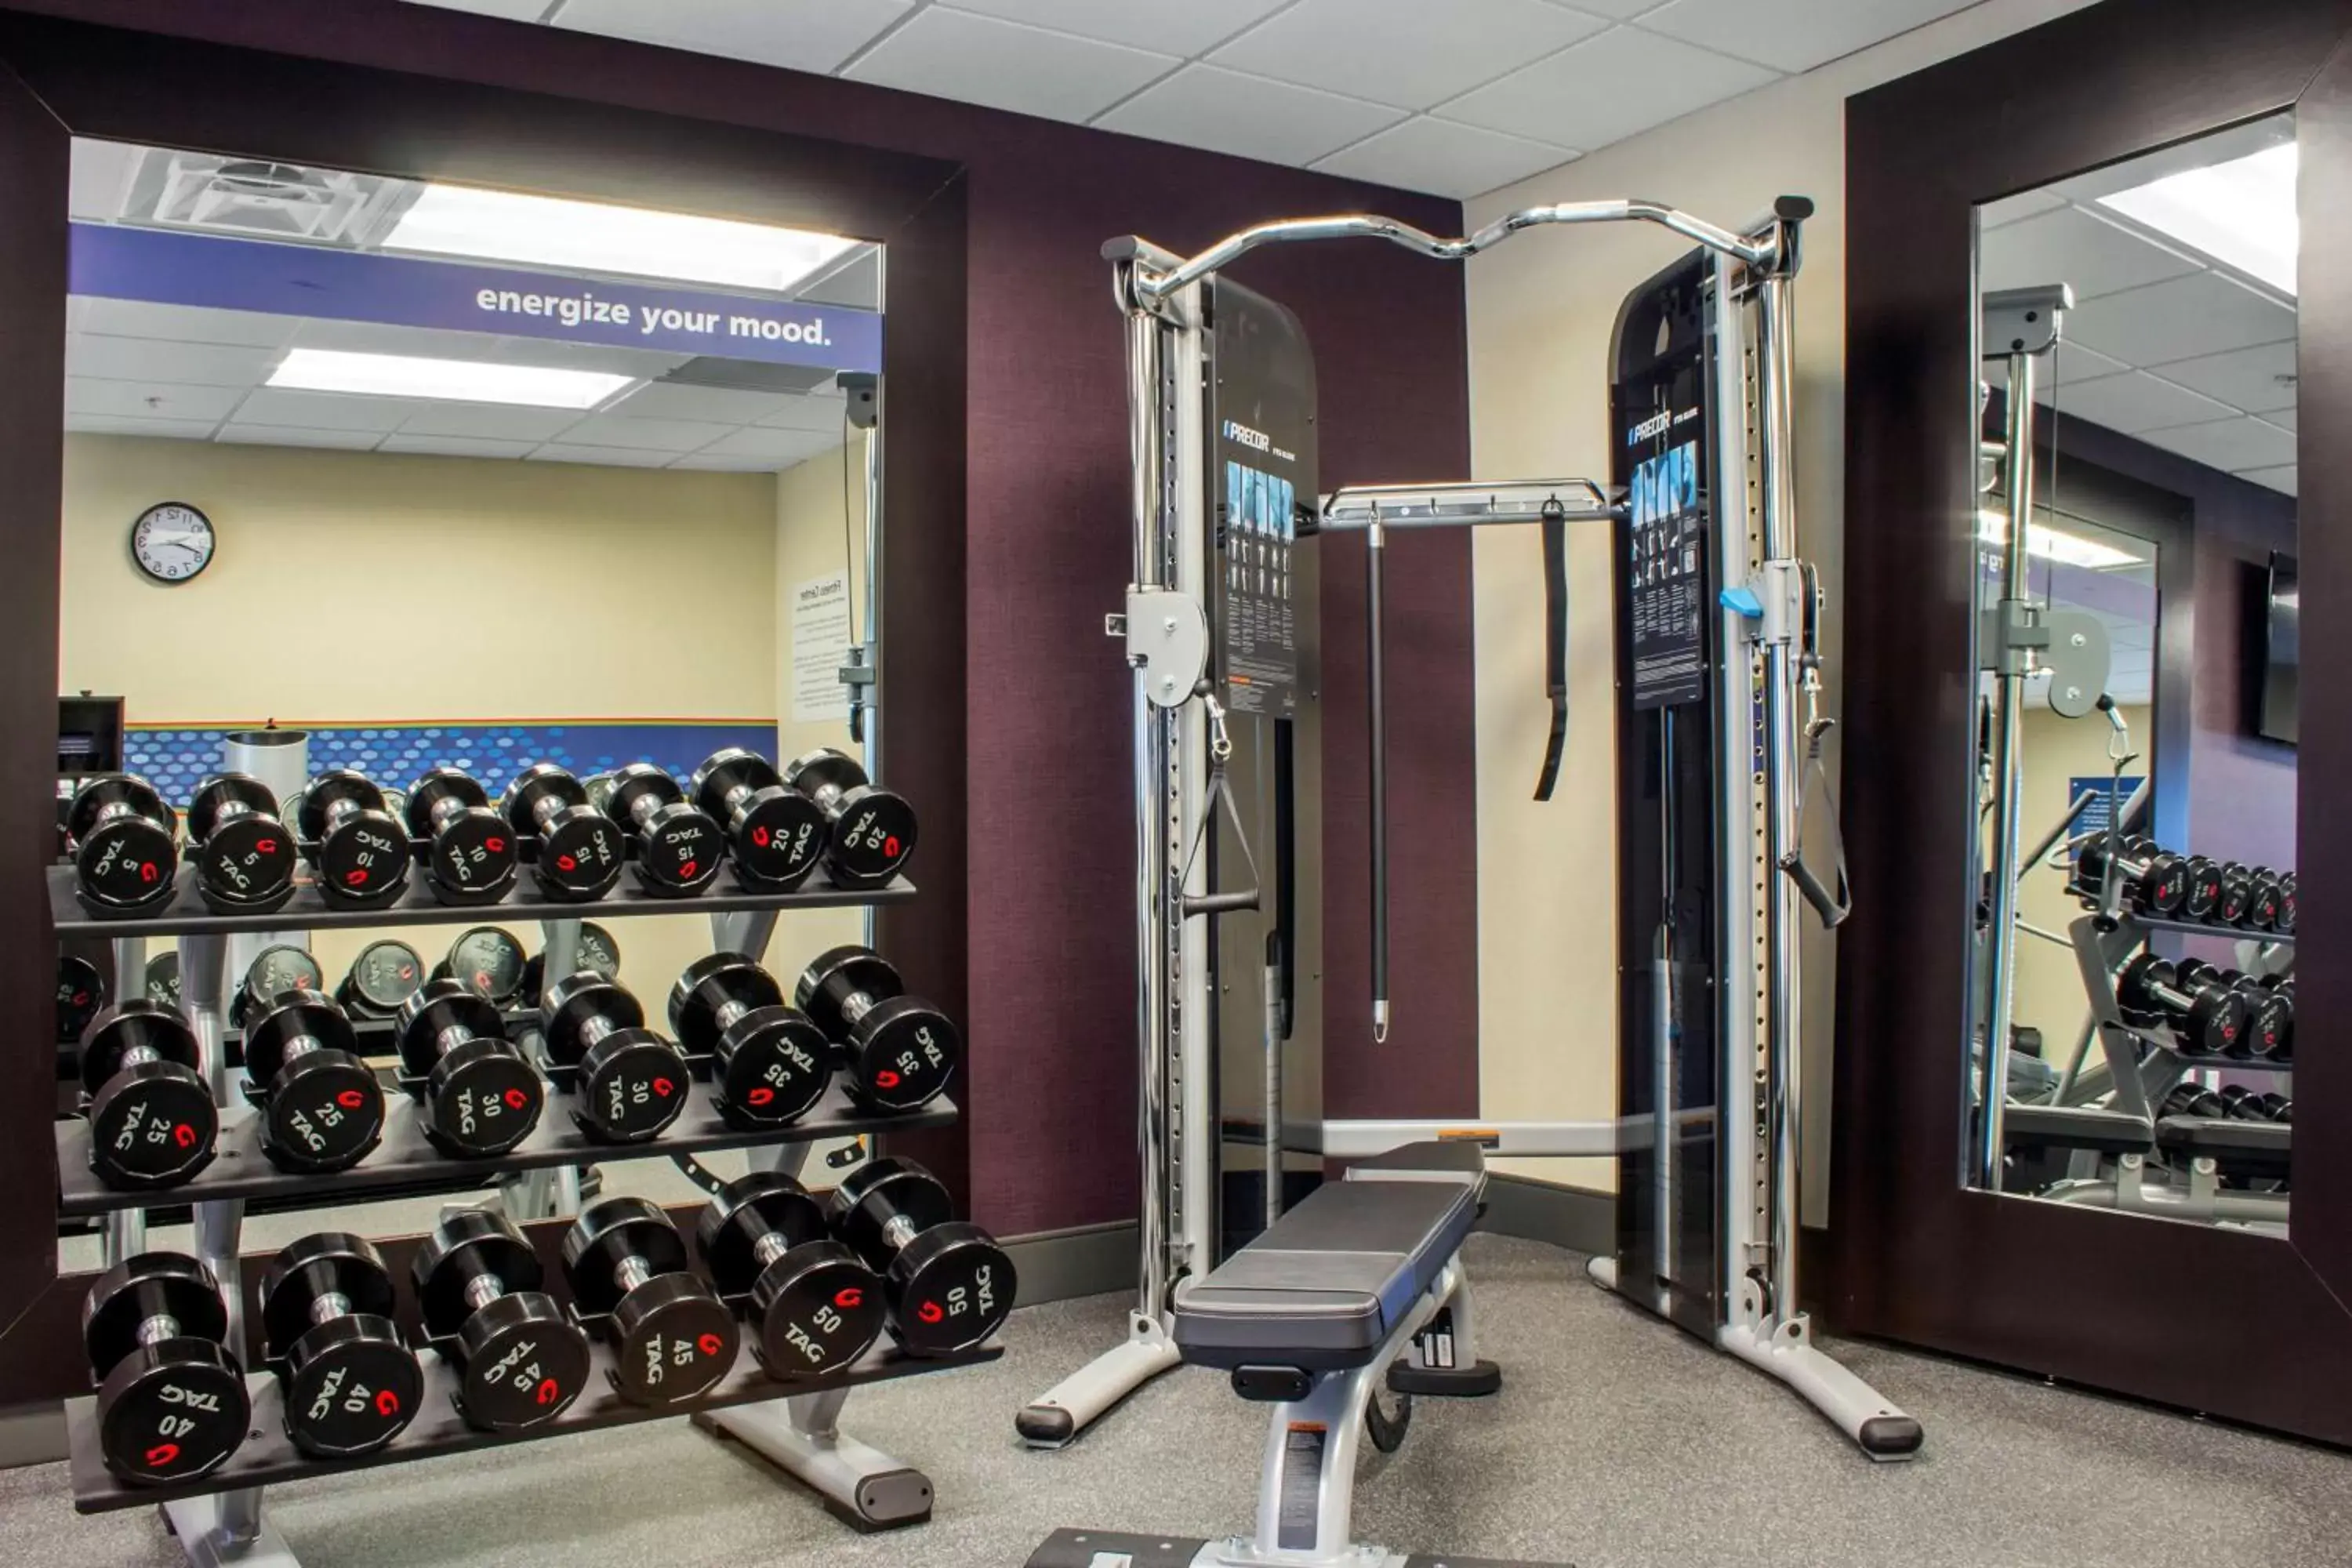 Fitness centre/facilities, Fitness Center/Facilities in Hampton Inn Parker, AZ